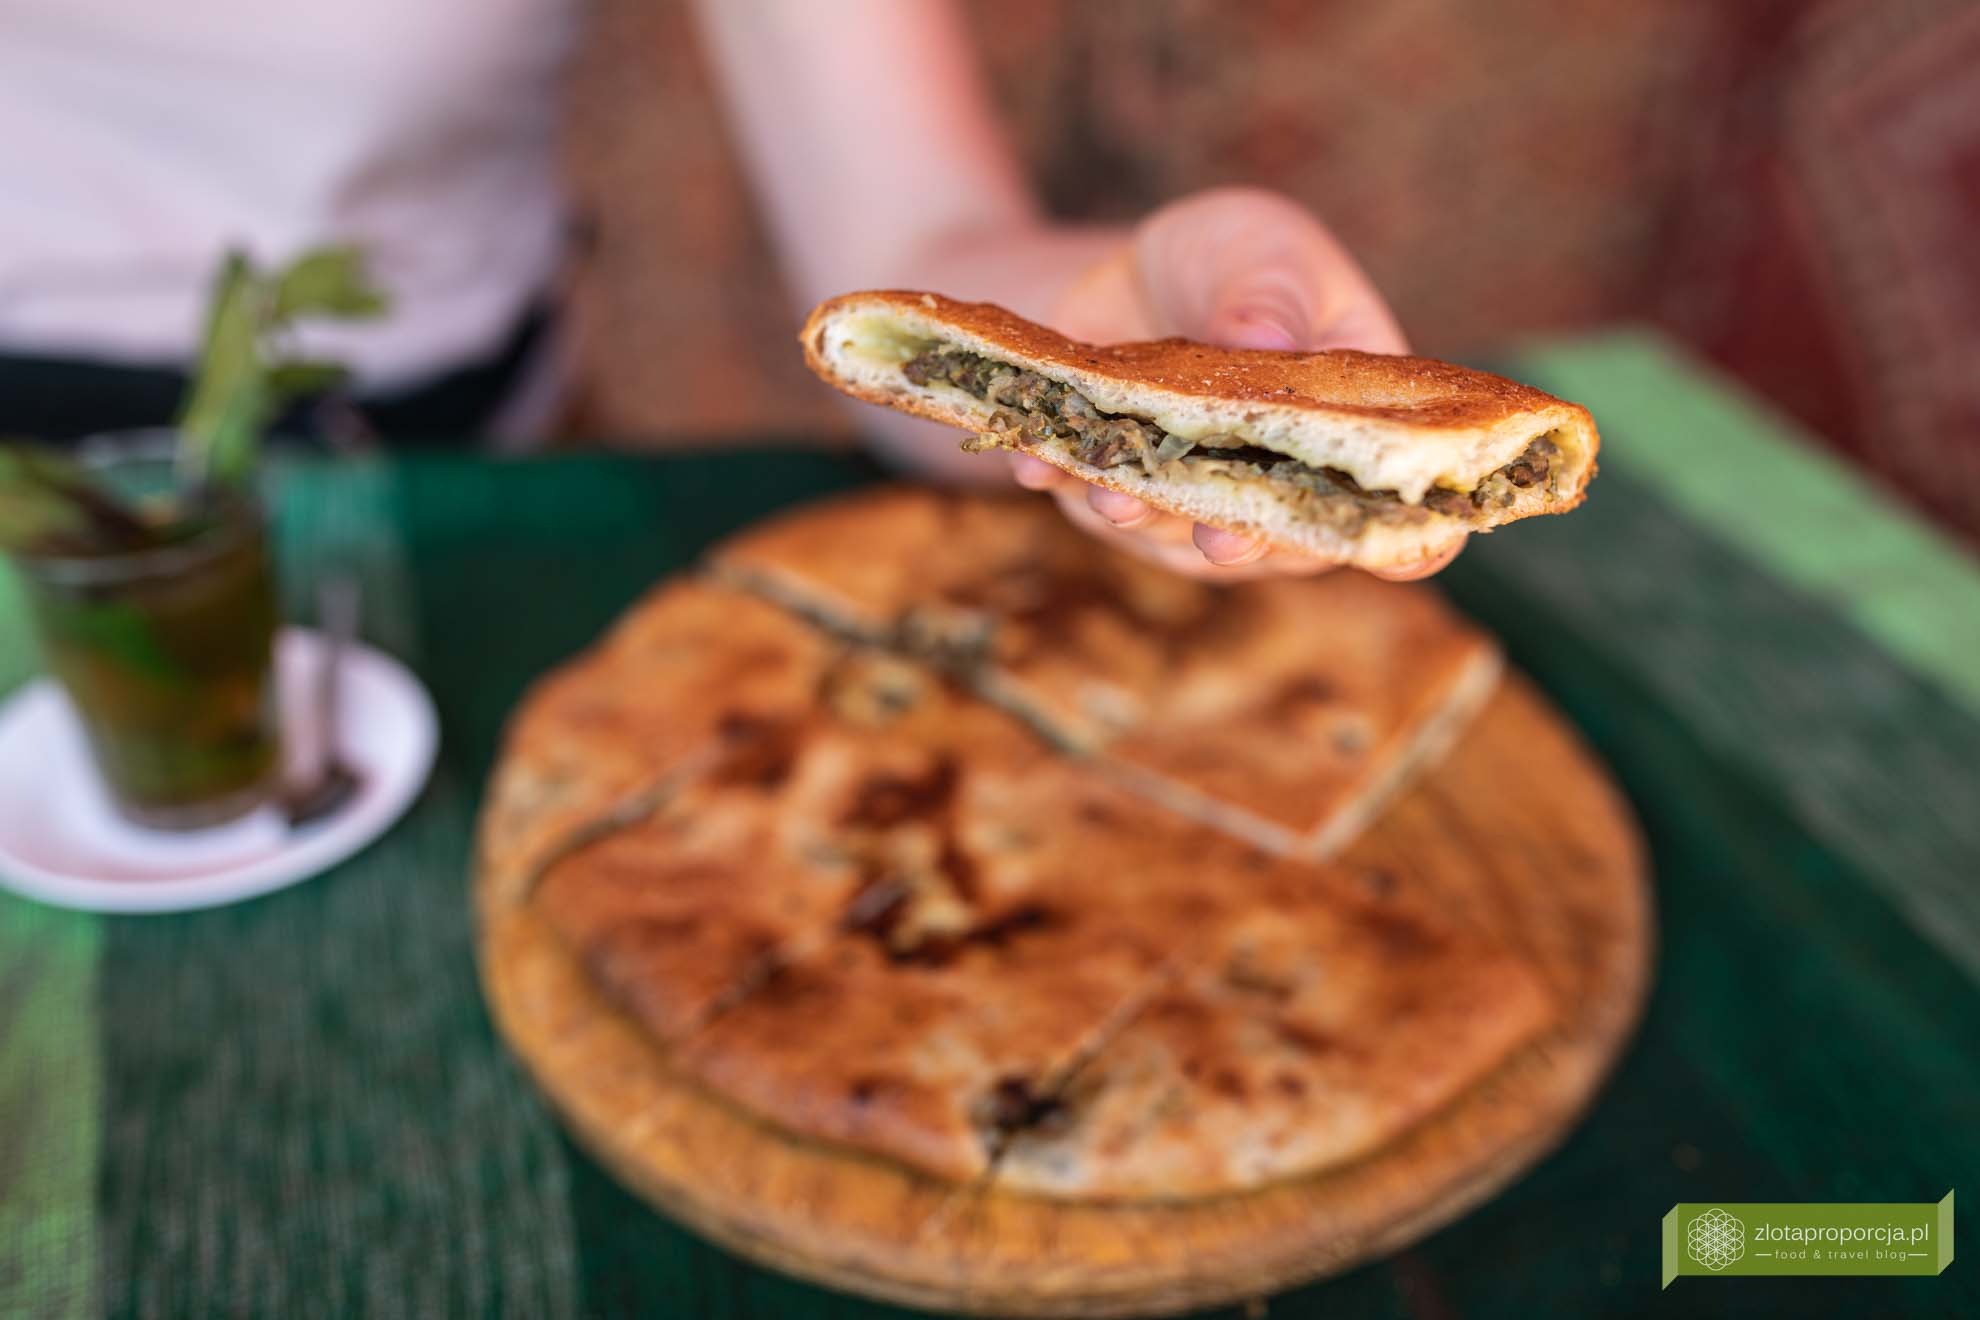 Maroko; Południowe Maroko; atrakcje Maroka, co zobaczyć w Maroku; Rissani; medfouna; Berber pizza; kuchnia MAroka; kuchnia marokańska, co zjeść w Maroku; Maroko pustynia; Sahara; 